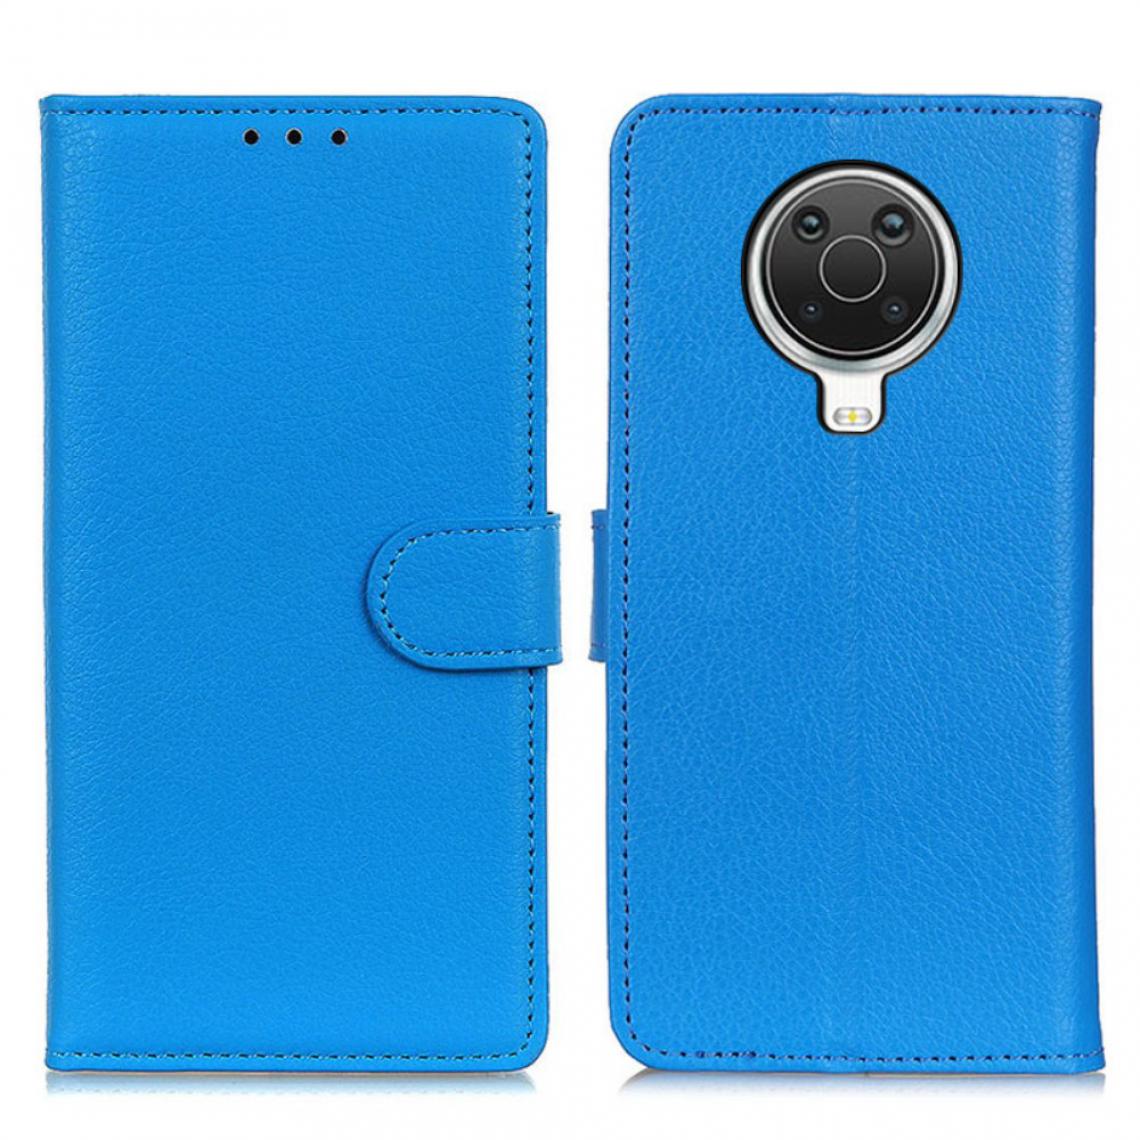 Other - Etui en PU Texture de litchi de style classique bleu pour votre Nokia 6.3/G10/G20 - Coque, étui smartphone